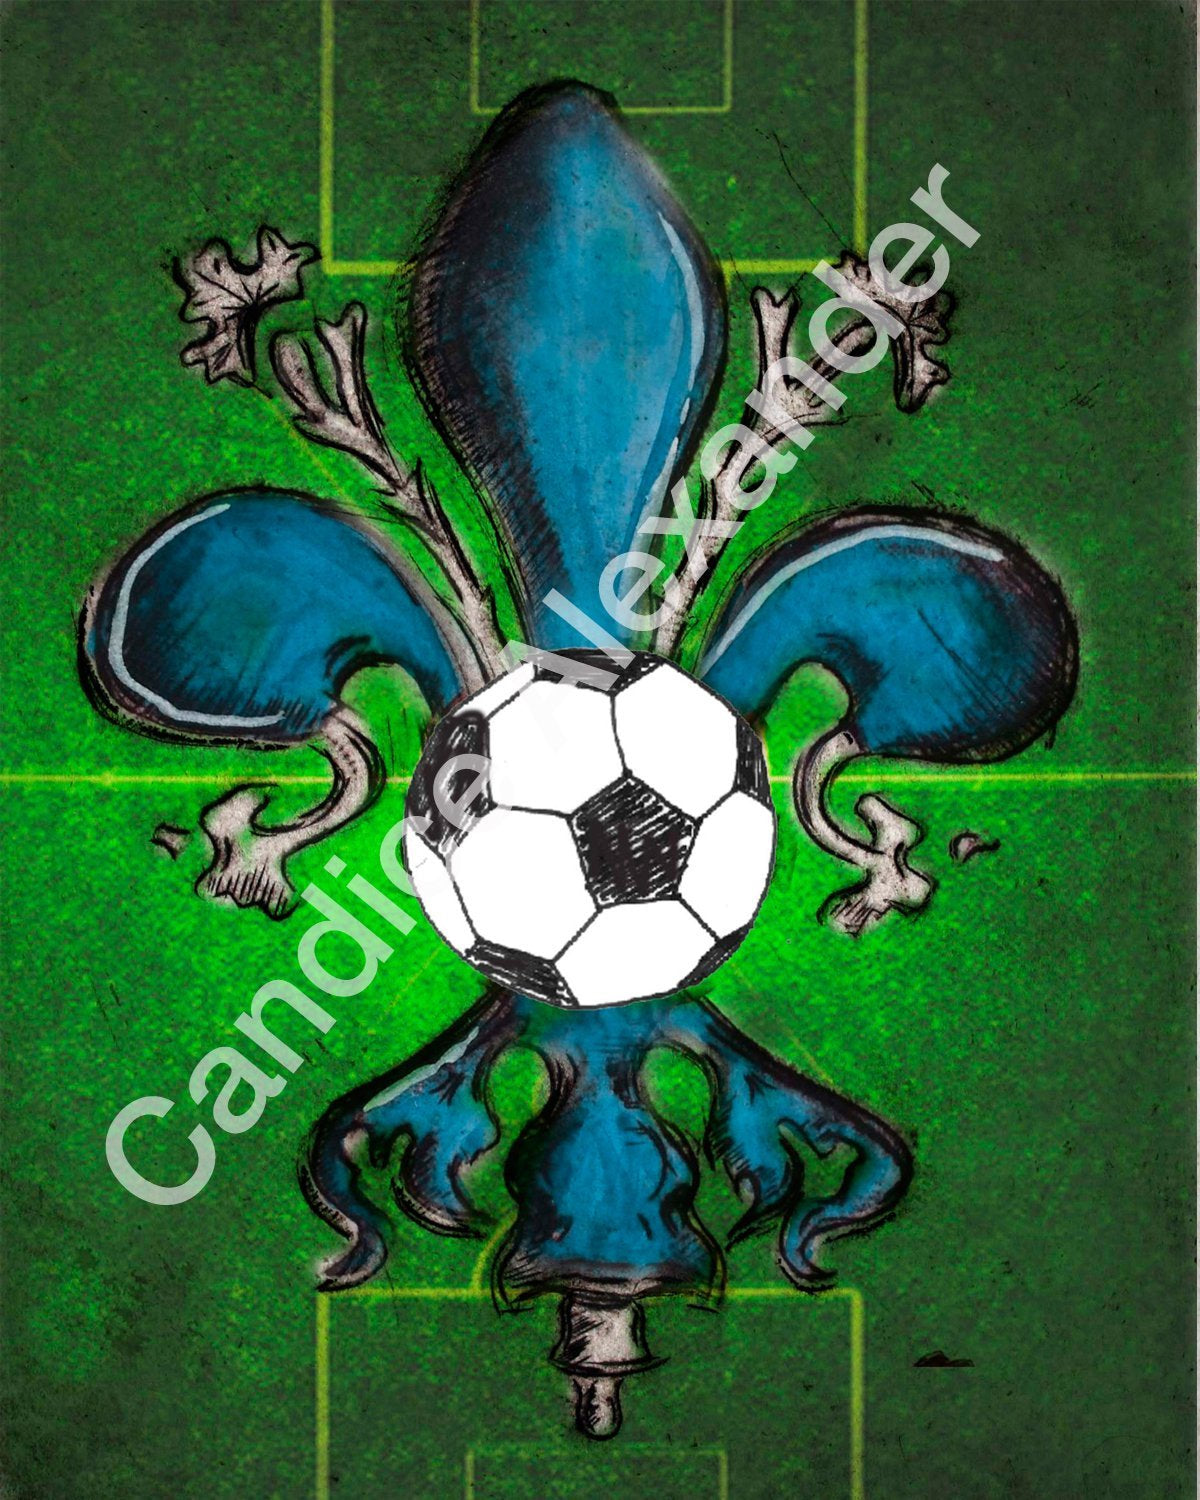 Soccer Fleur De Lis design by Candice Alexander Fleur De Lis art by Candice Alexander, Louisiana Artist